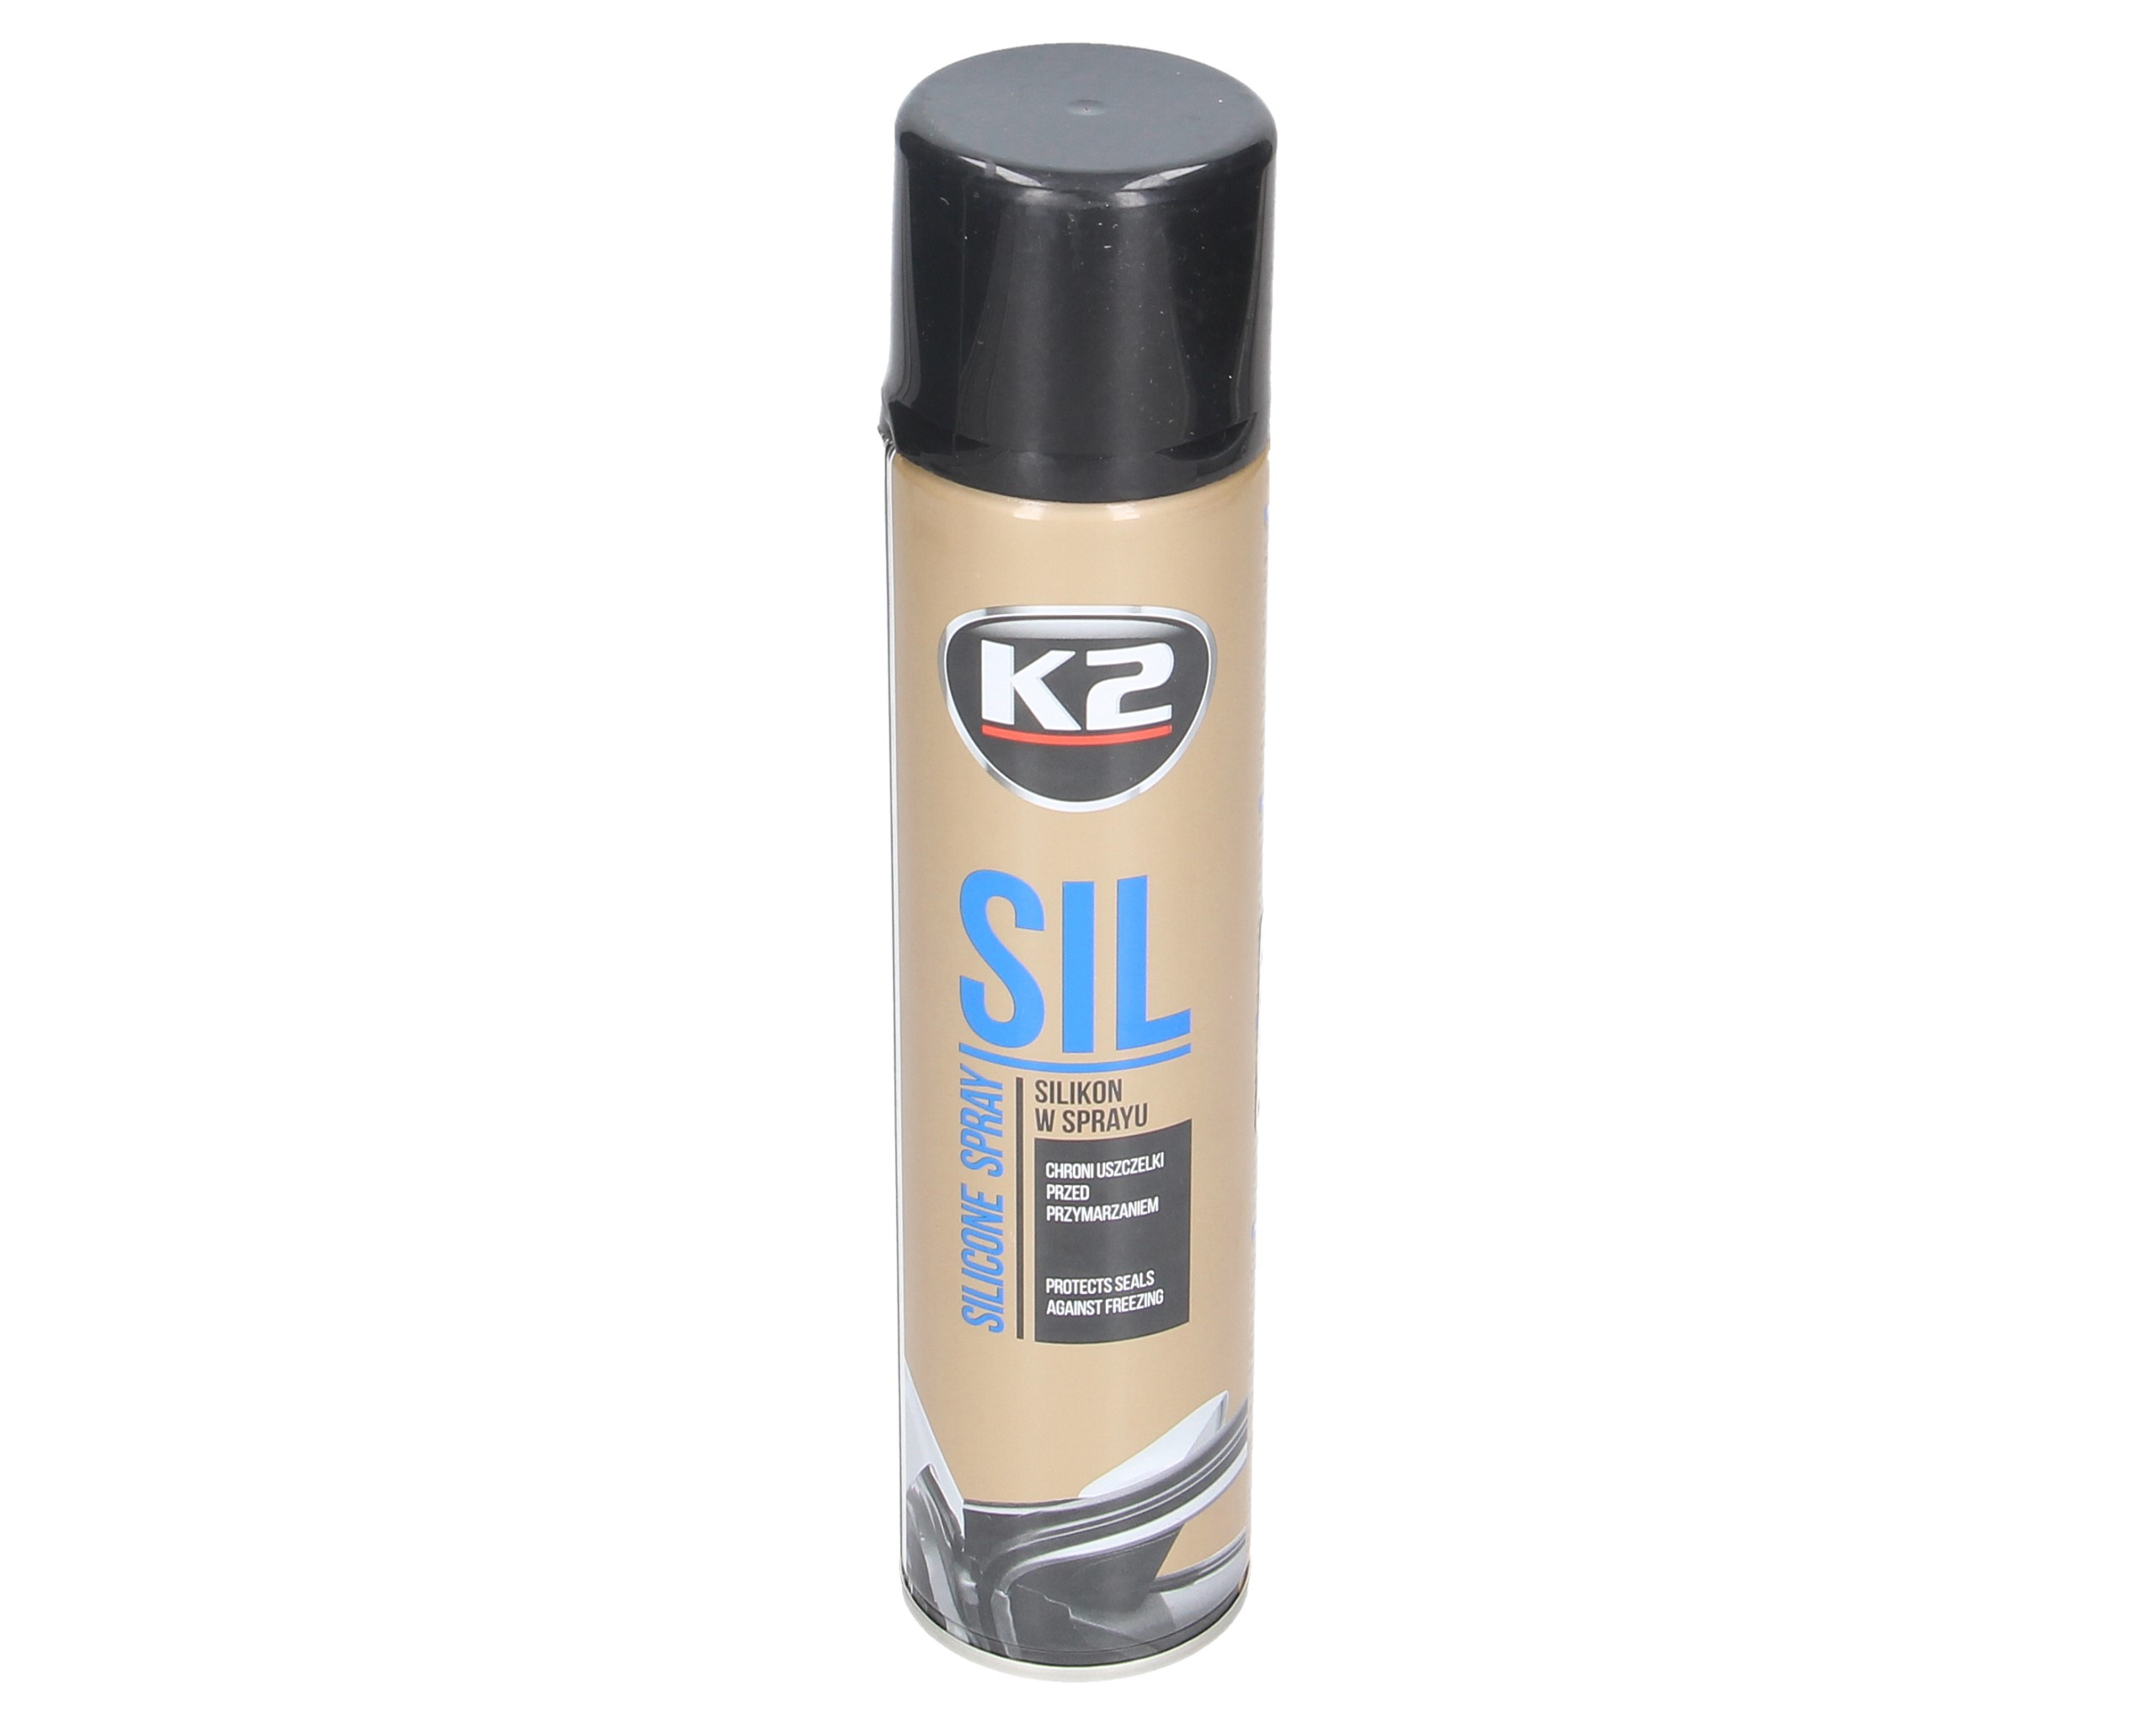 K2 sil 100% silikon w sprayu - do uszczelek